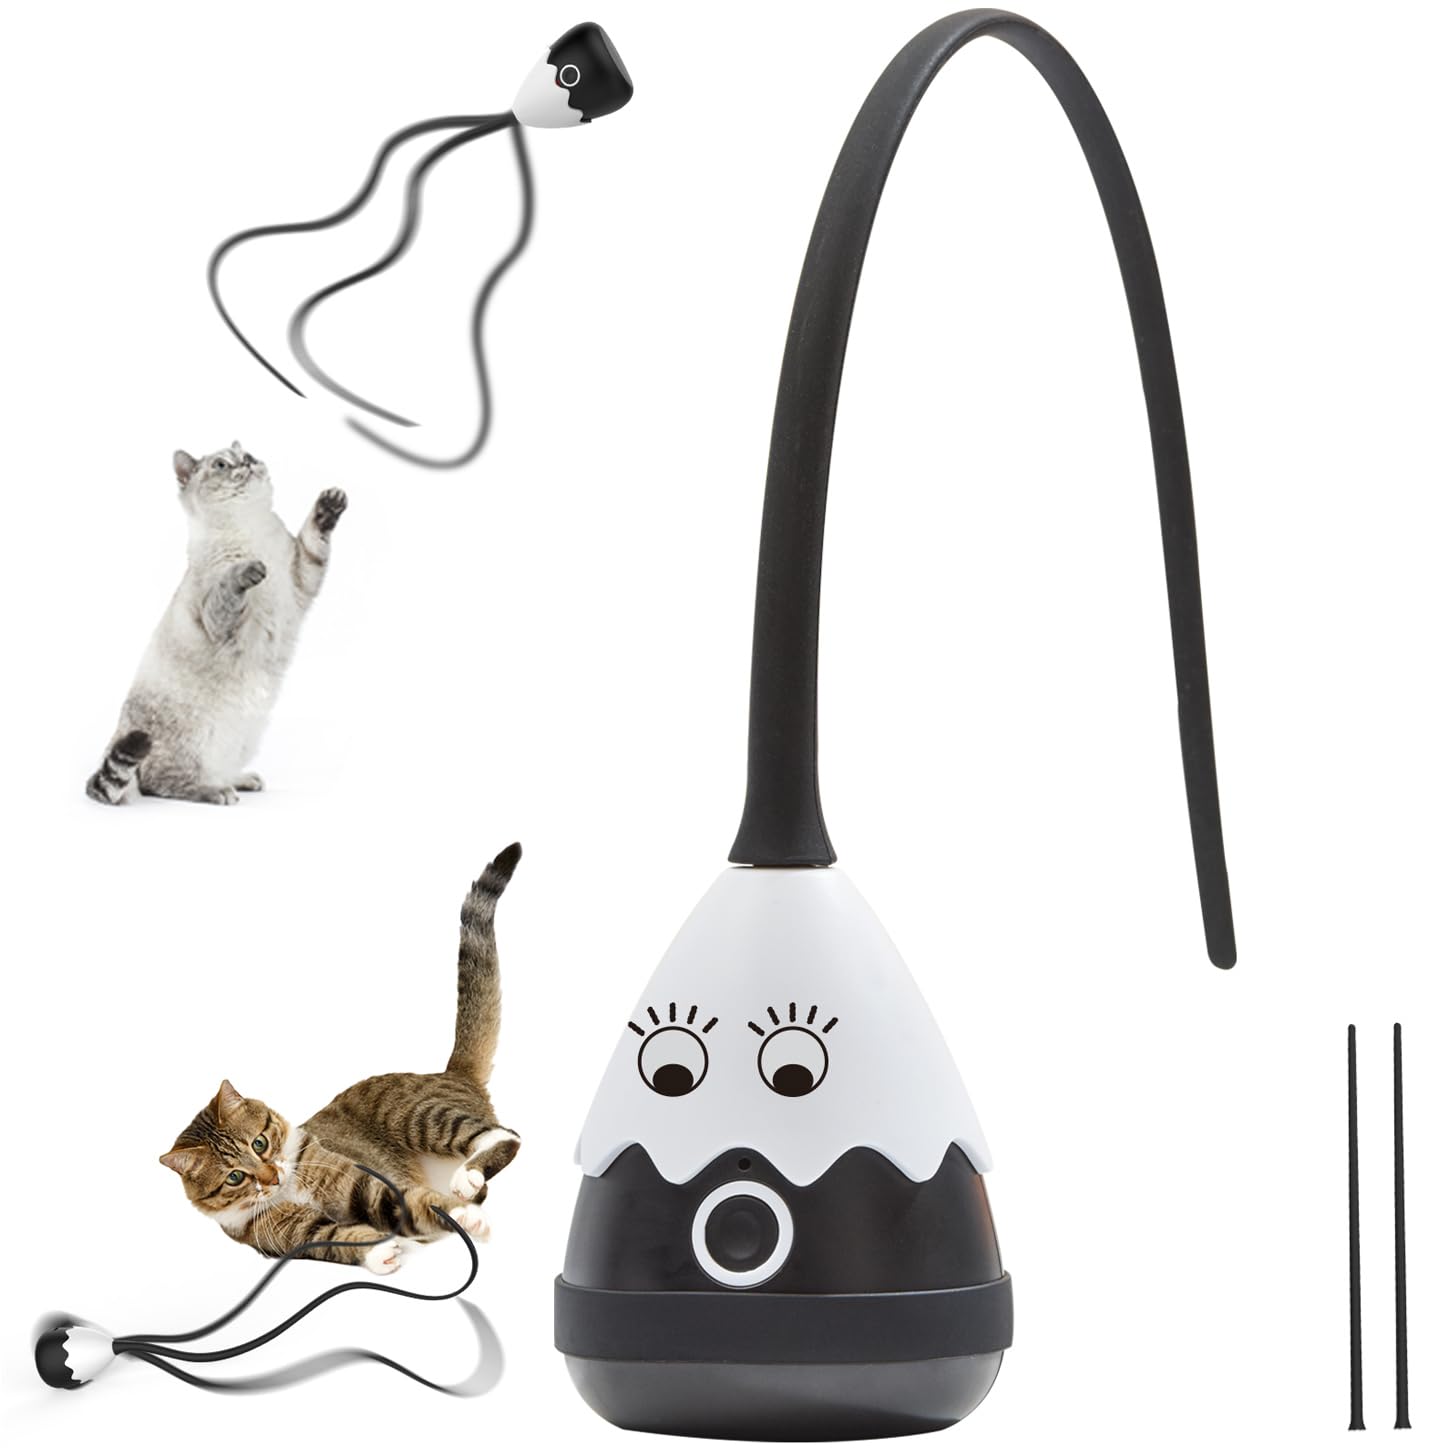 Petcronies 猫 おもちゃ 猫じゃらし 2in1 ねこの玩具 自動 電動 猫動くおもちゃ 猫ちゃん狩猟天性満足 ねこ用 室内 USB充電式 安全素材 ペットおもちゃ (ブラック)